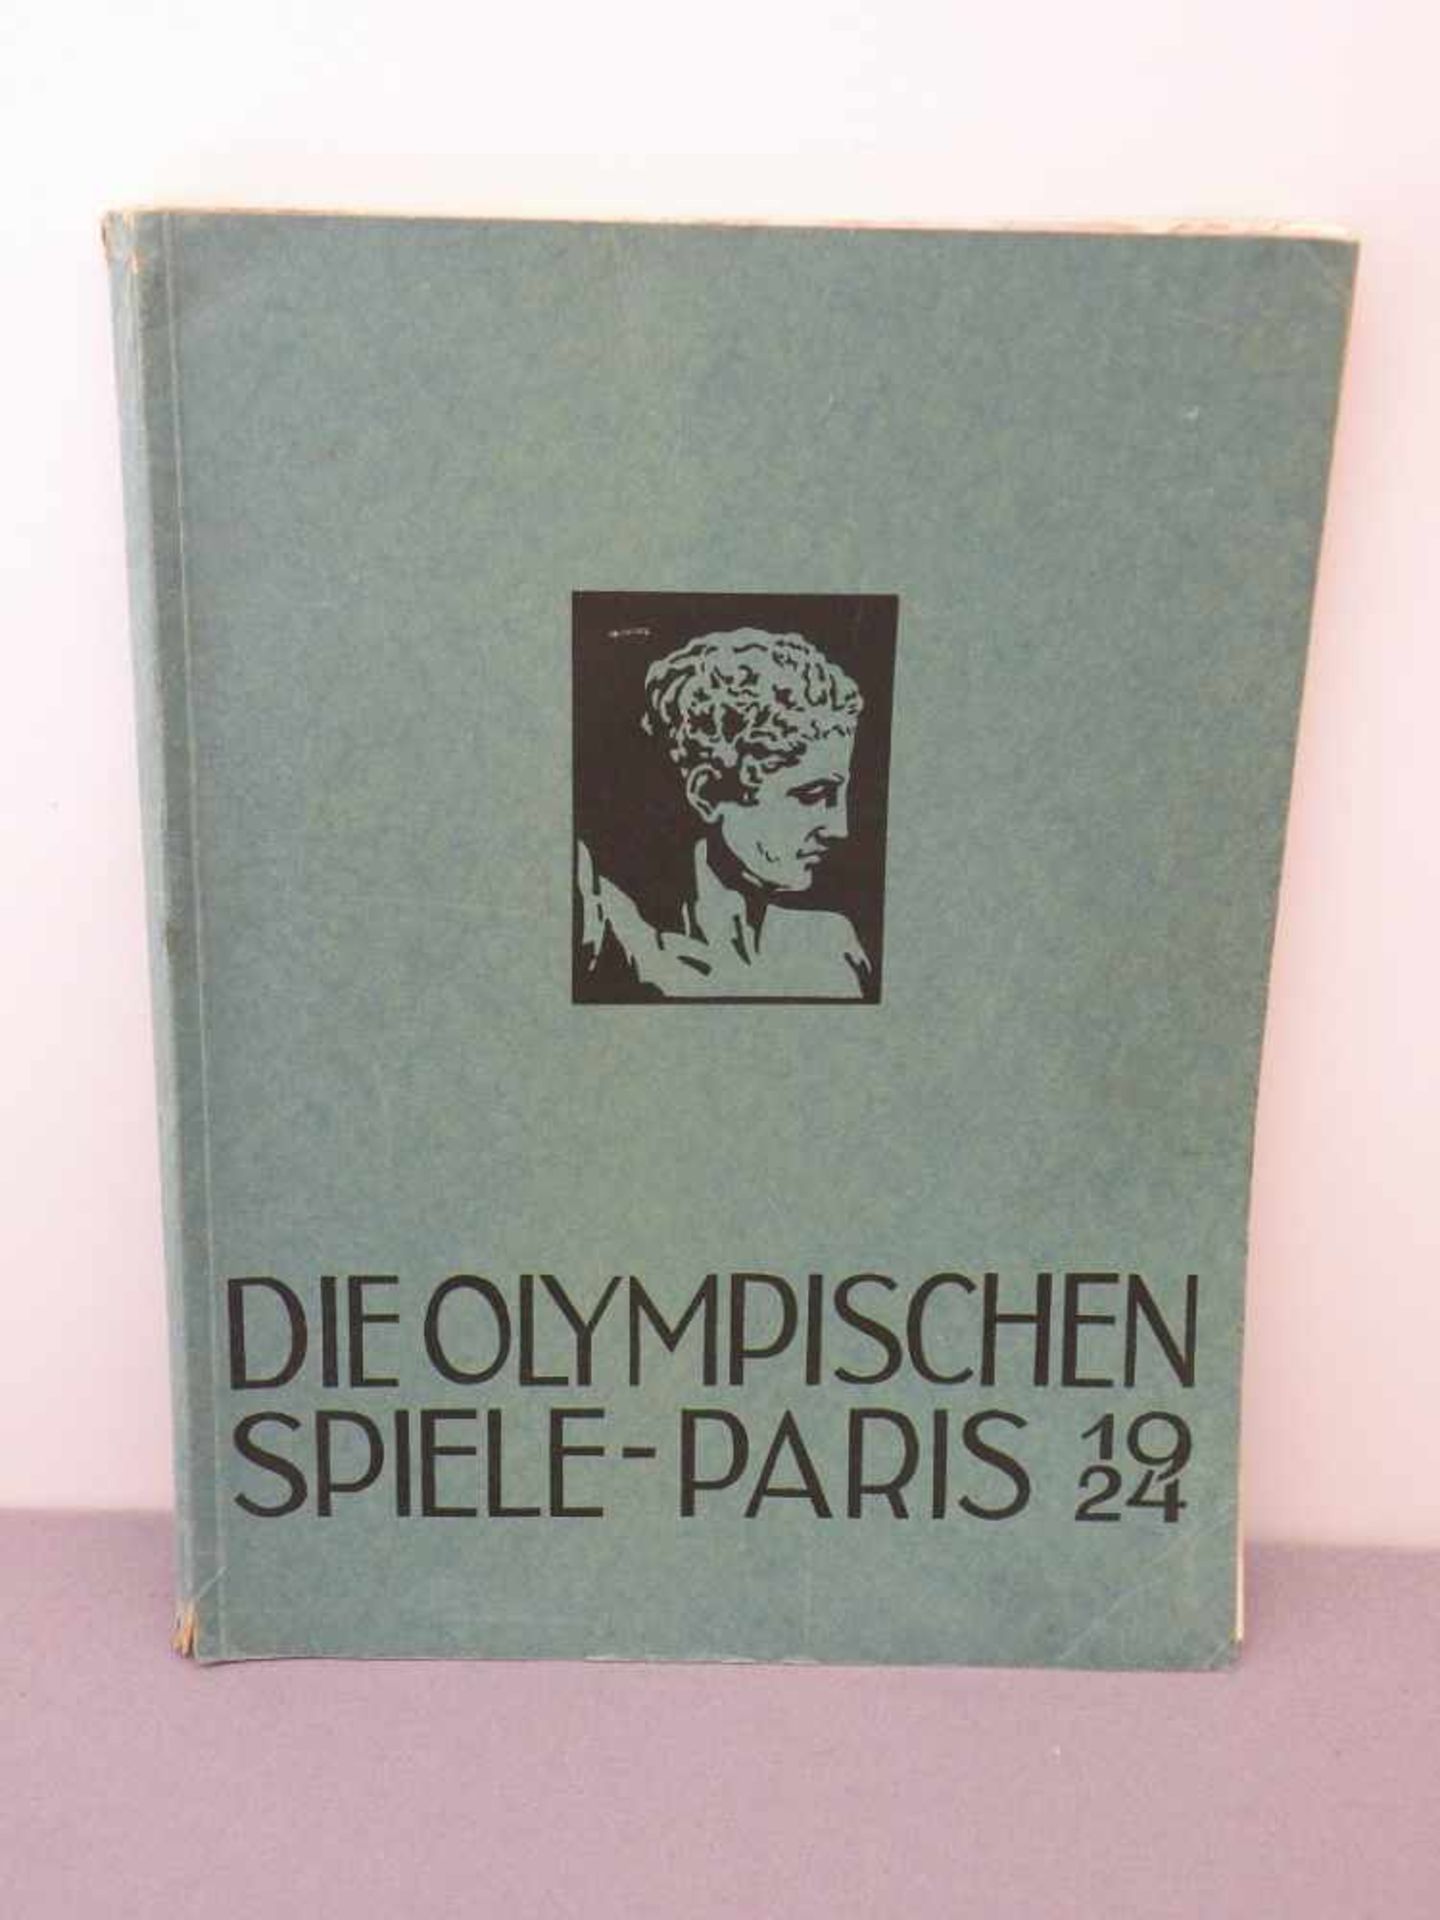 Buch "Die olympischen Spiele Paris 1924" illustriert, Verlag Wagner, 1925, berieben